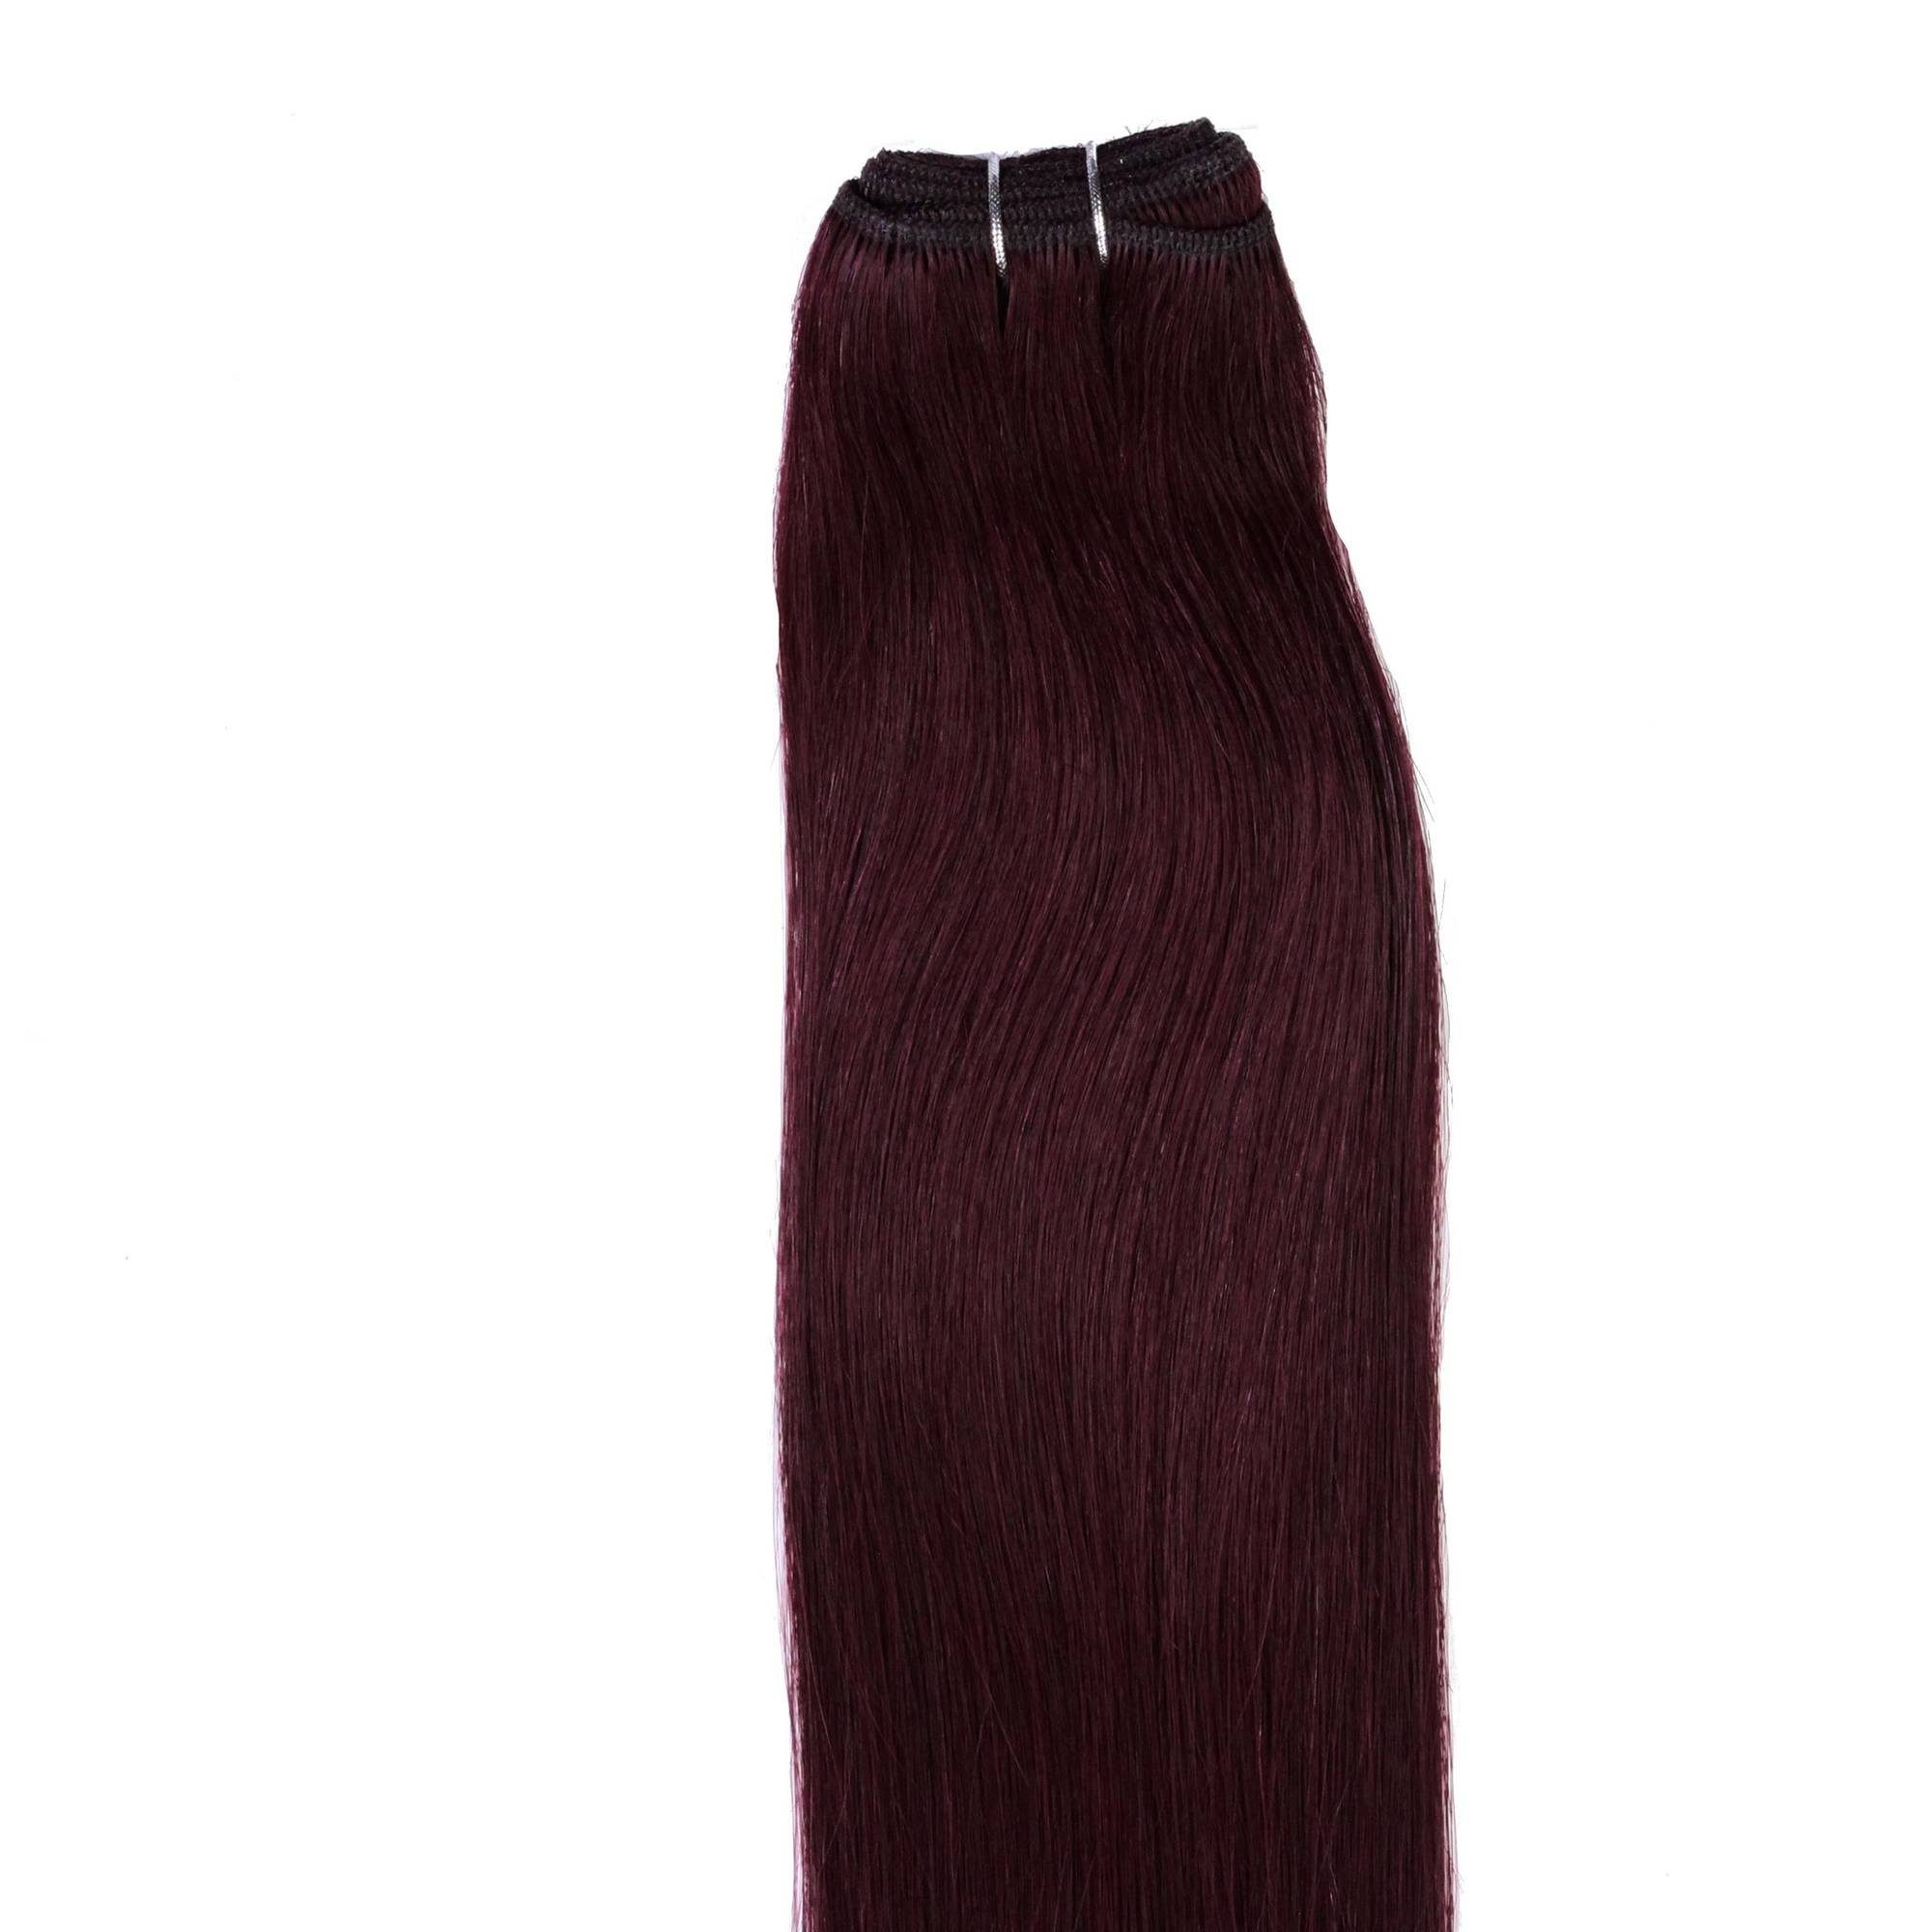 hair2heart Echthaar-Extension Glatte Violett Hellbraun Echthaartresse 40cm #55/66